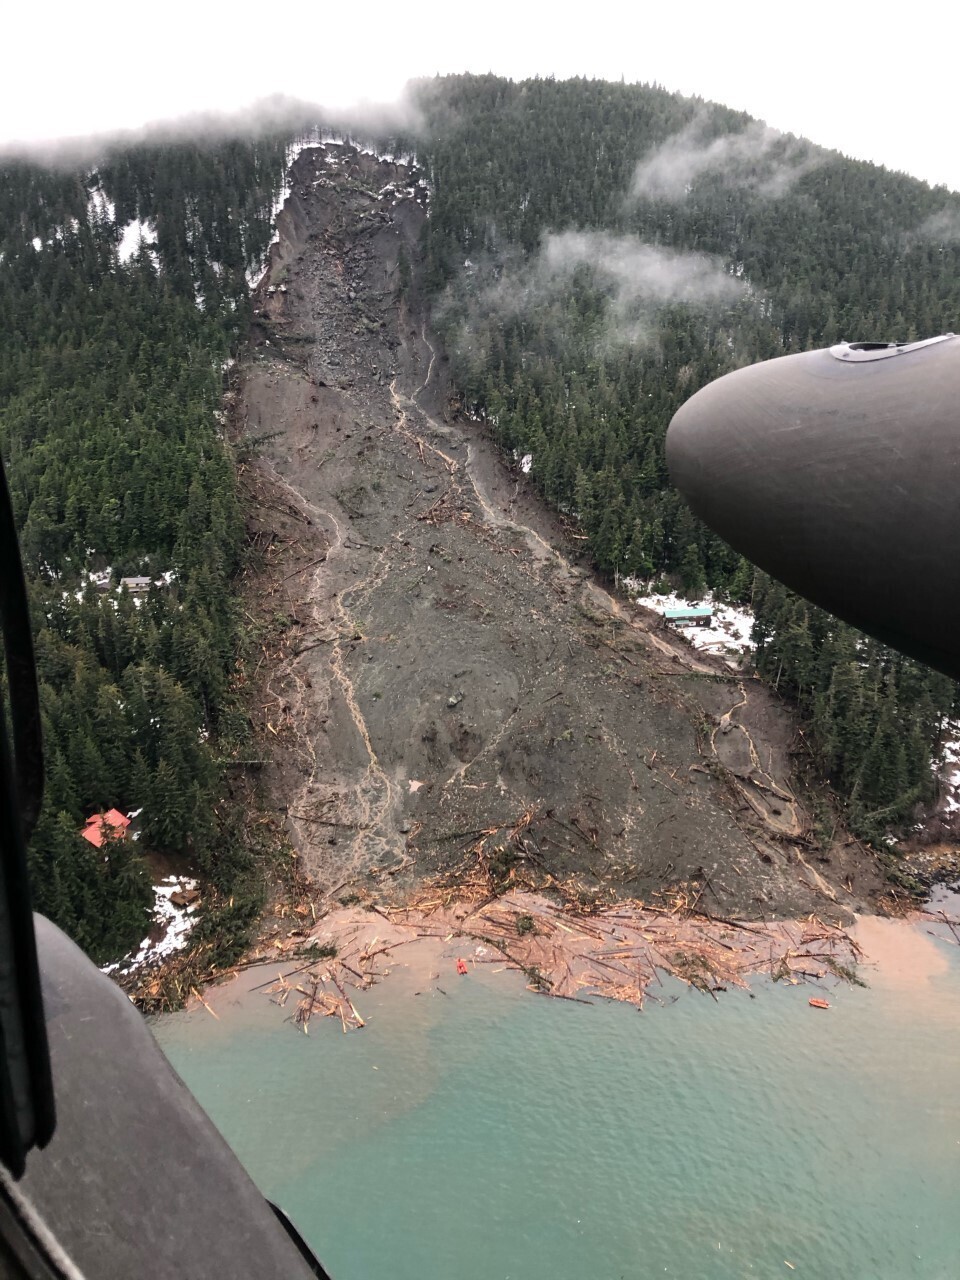 Alaska Officials Say Landslide Danger Remains After Storm